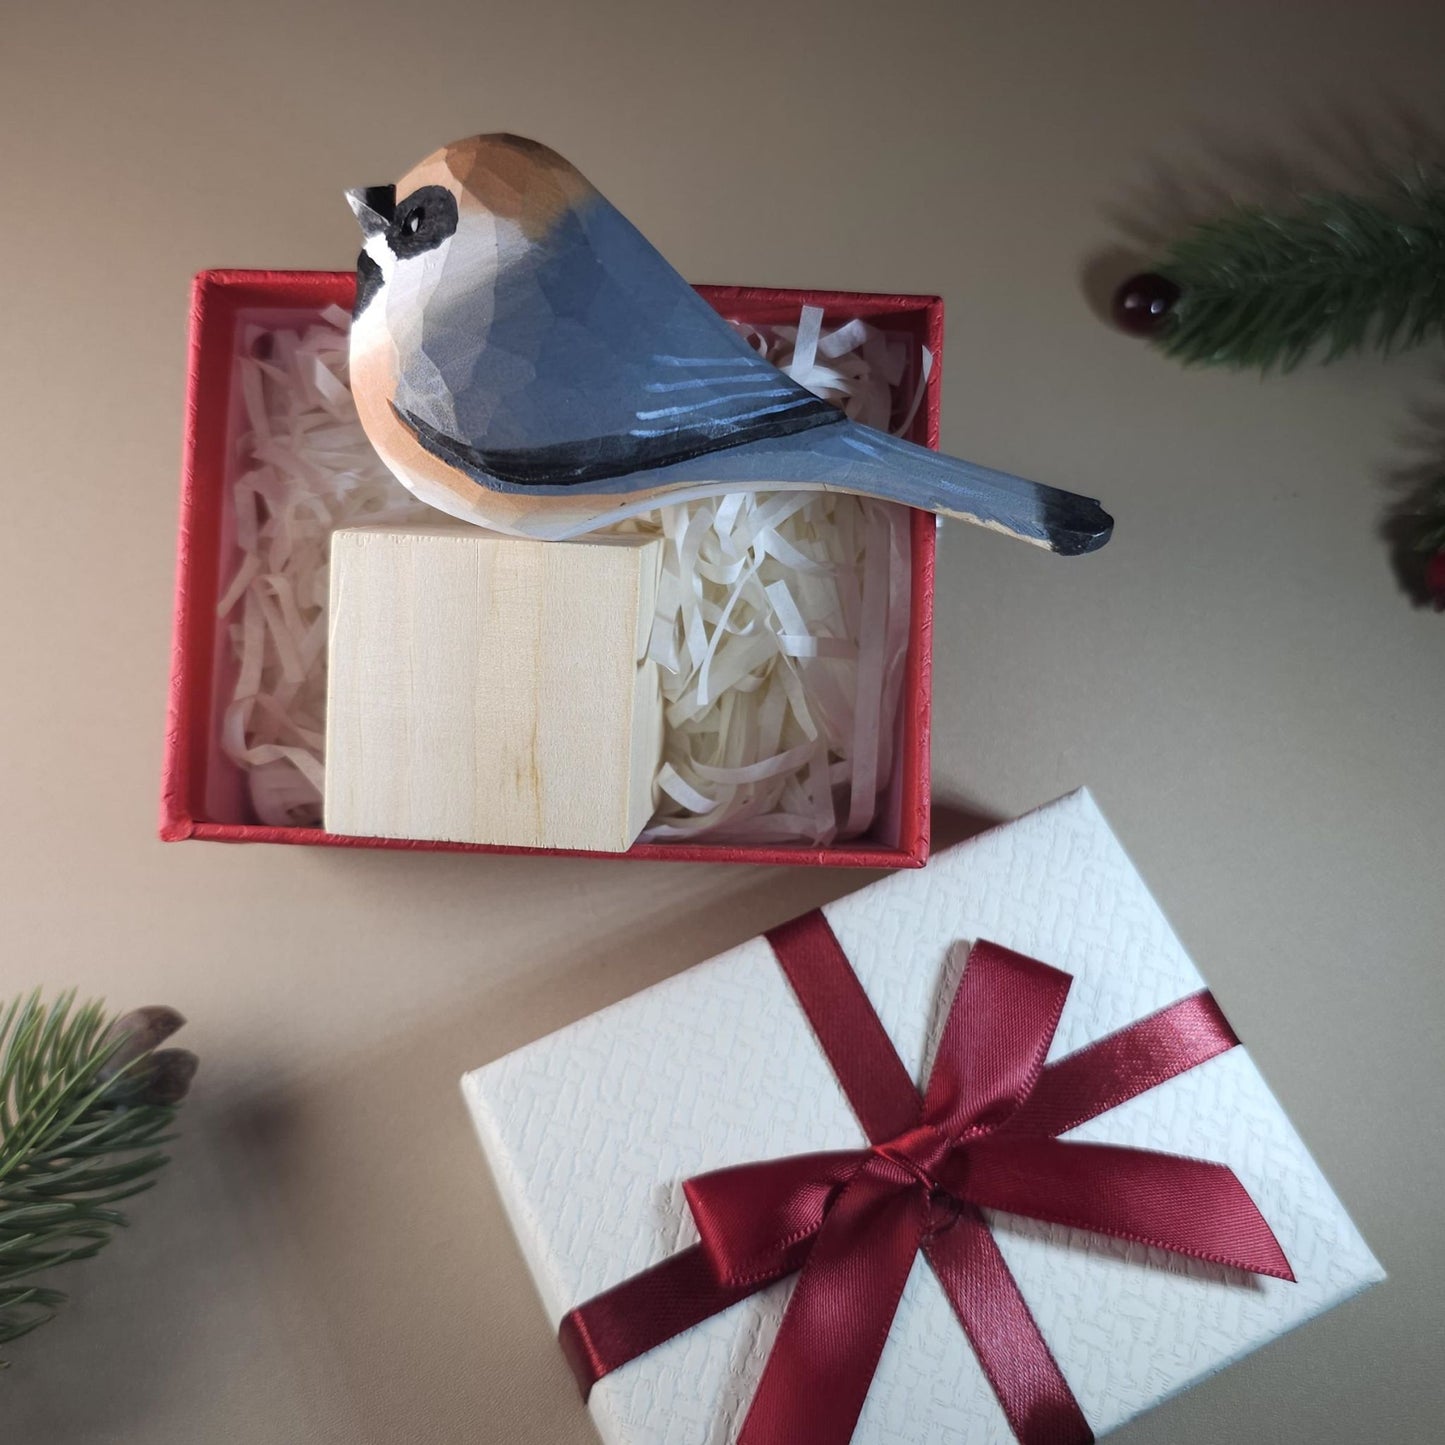 La figura de pájaro viene con soporte de madera y caja de regalo.